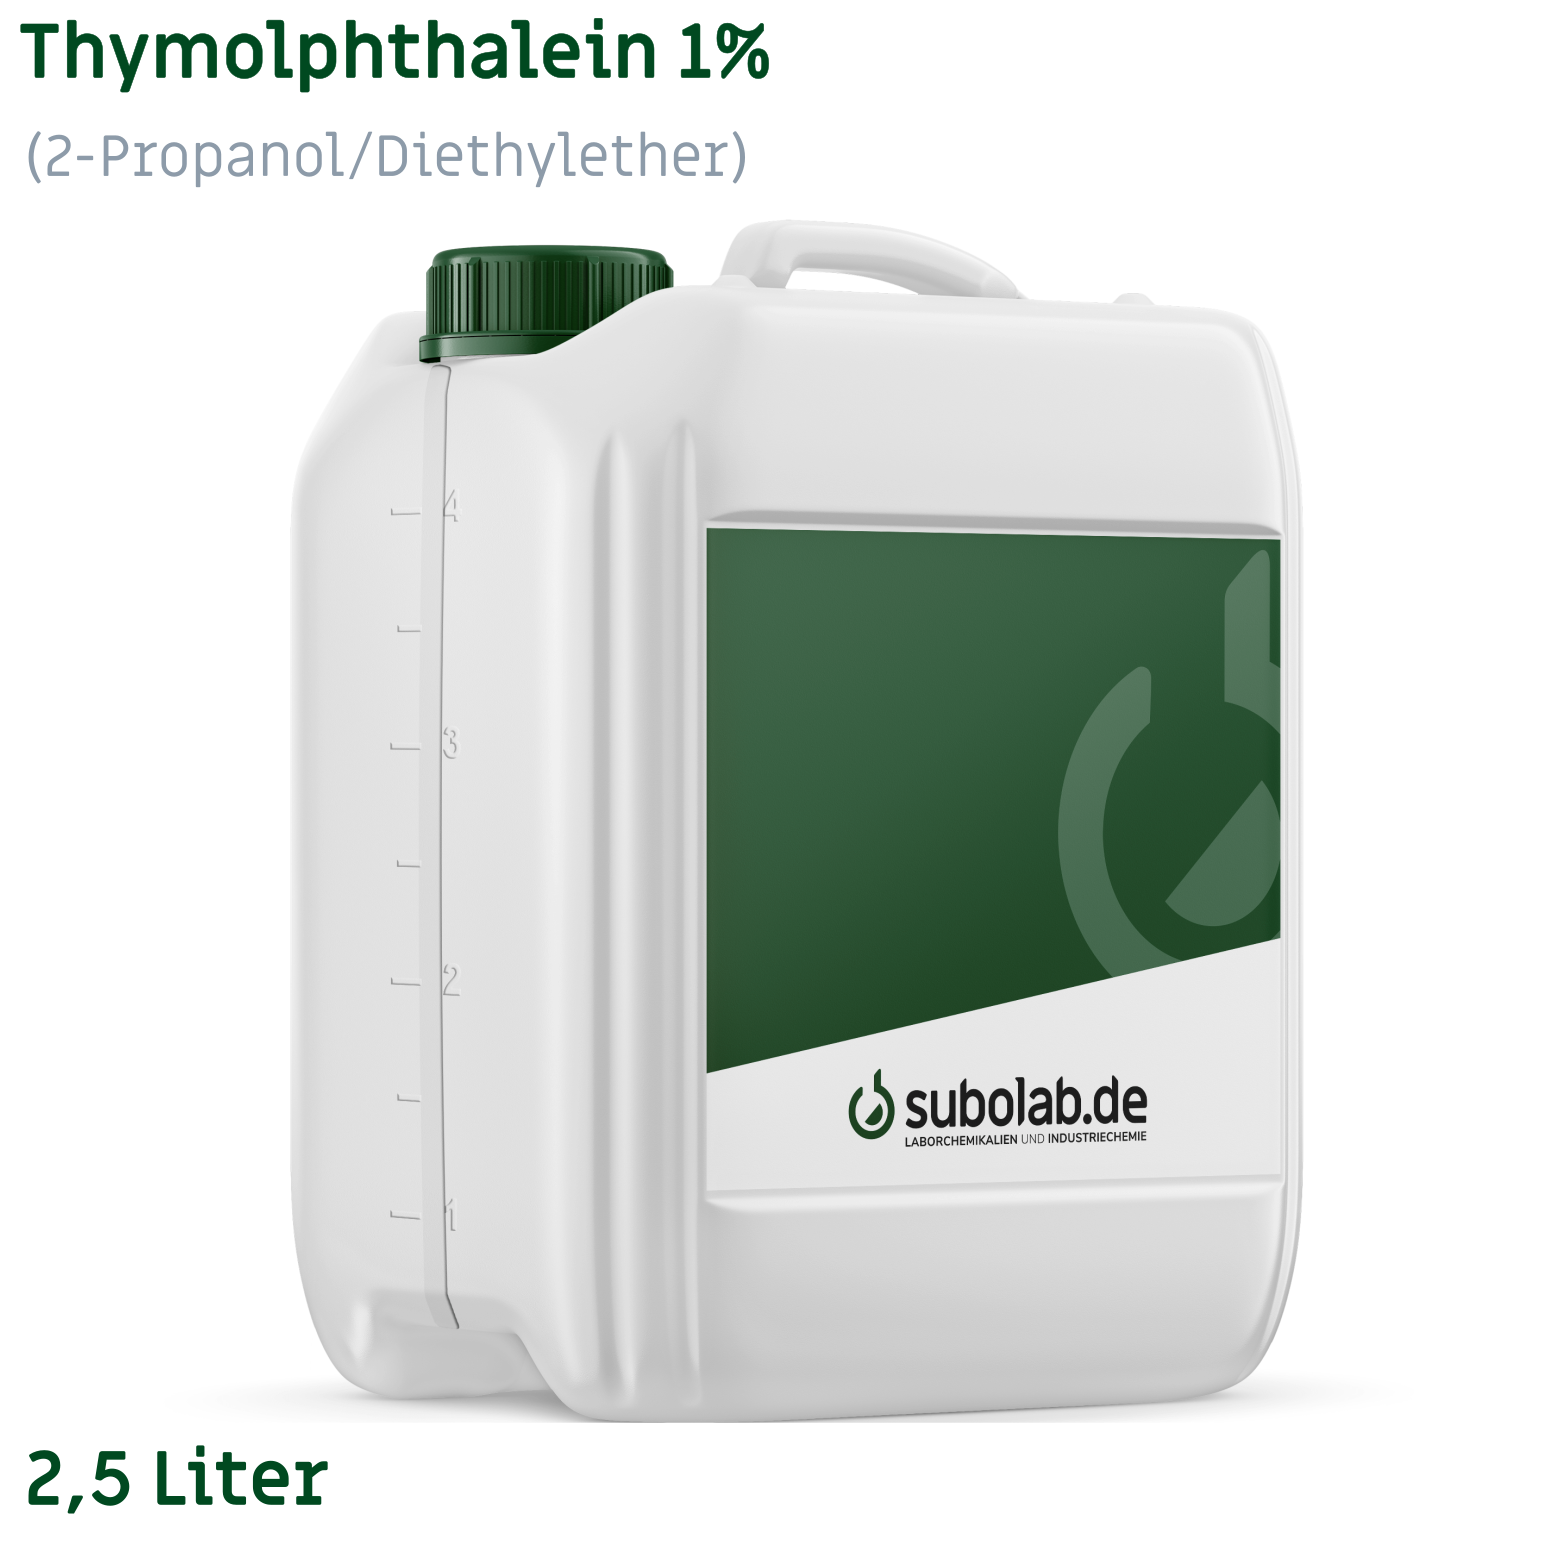 Bild von Thymolphthalein 1% (2-Propanol/Diethylether) (2,5 Liter)